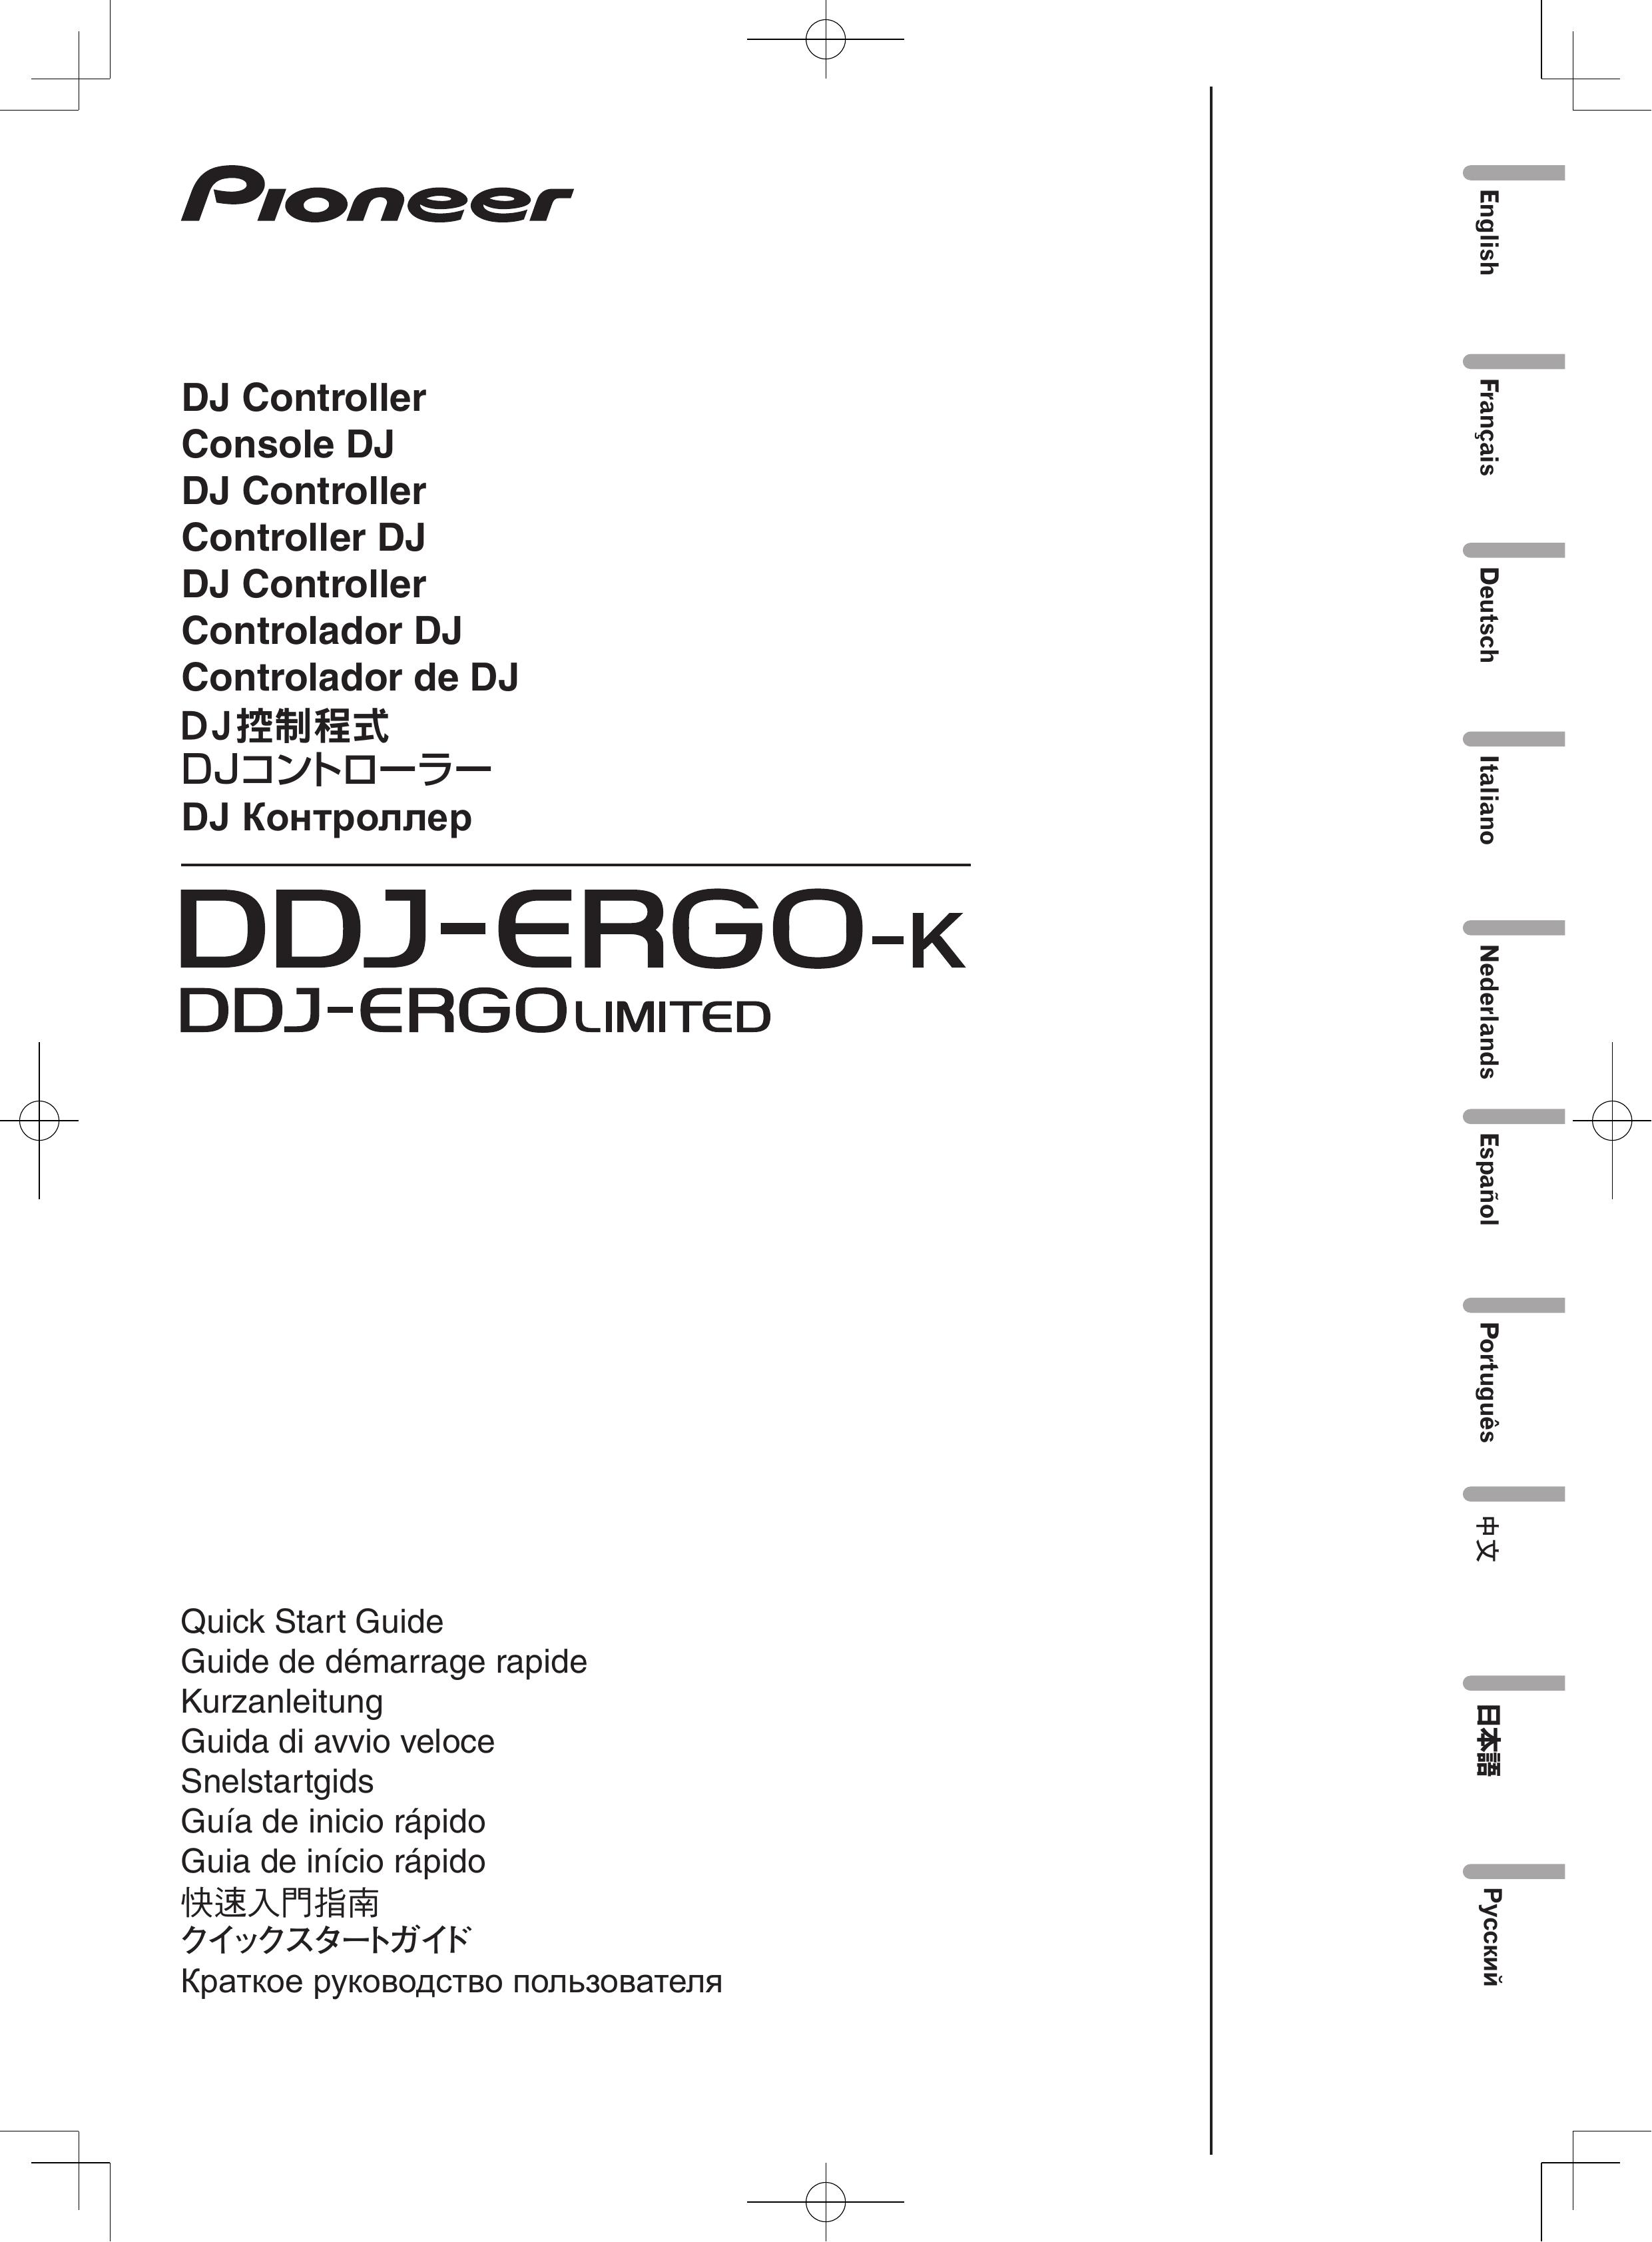 Pioneer DDJ-ERGO-K DJ Equipment User Manual